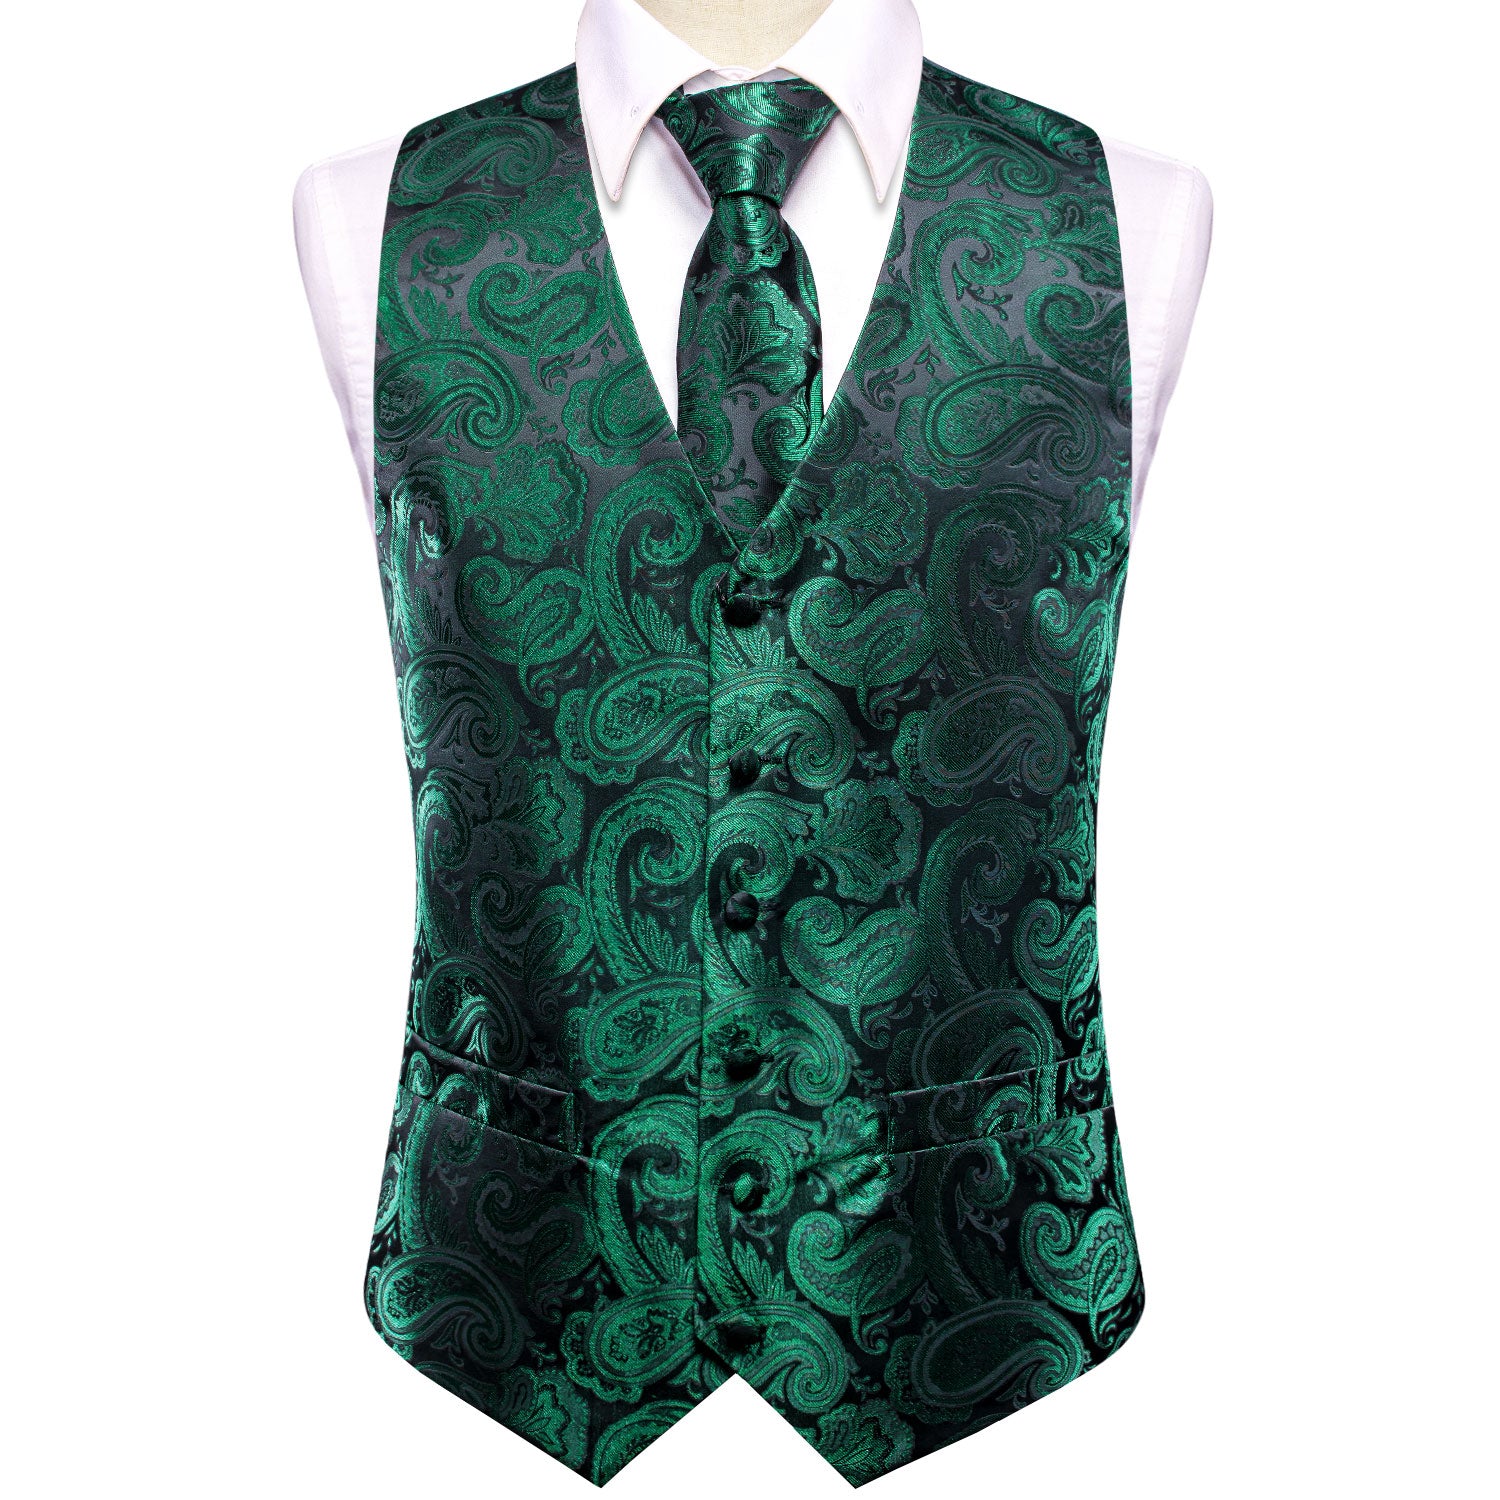 Luxury Emerald Green Paisley Silk Men's Vest Hanky Cufflinks Tie Set Waistcoat Suit Set